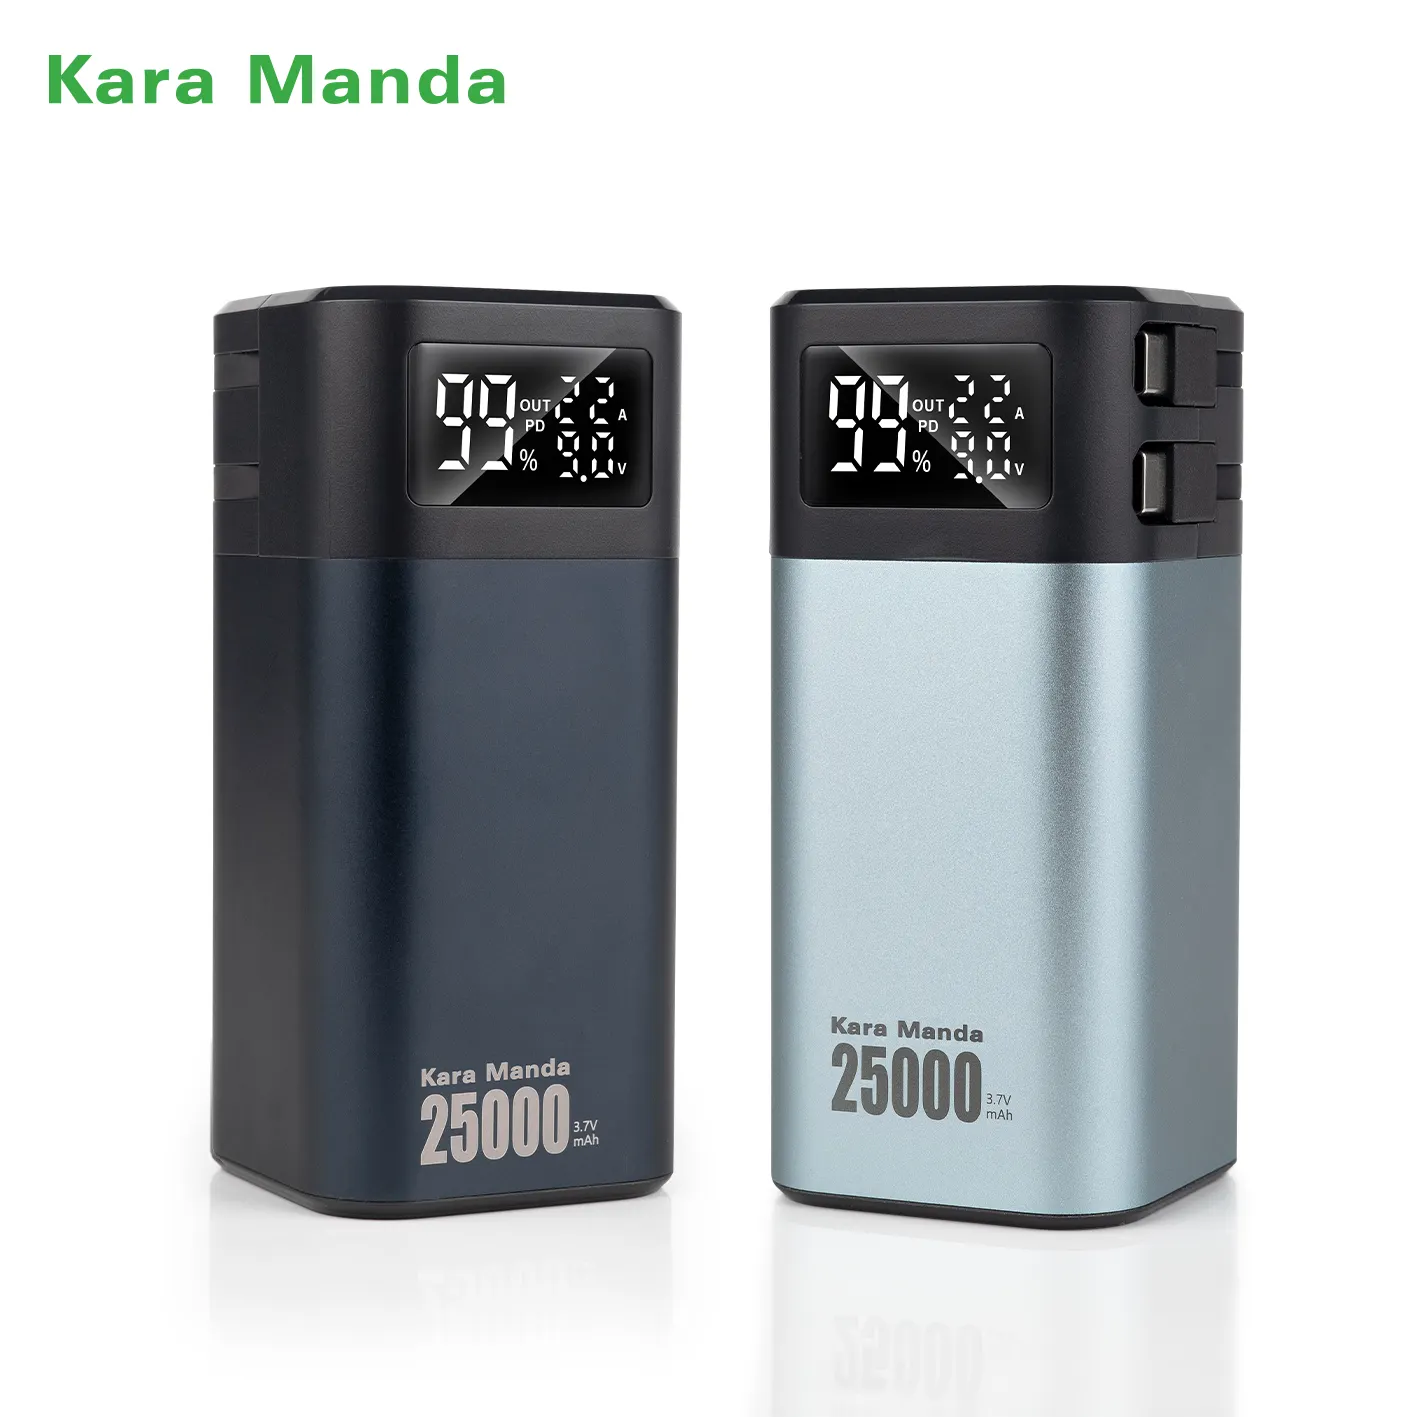 Kara Manda haute qualité 4680 voiture jauge batterie externe pour Tesla grande capacité 25000mAh batterie externe charge rapide Portable batterie externe